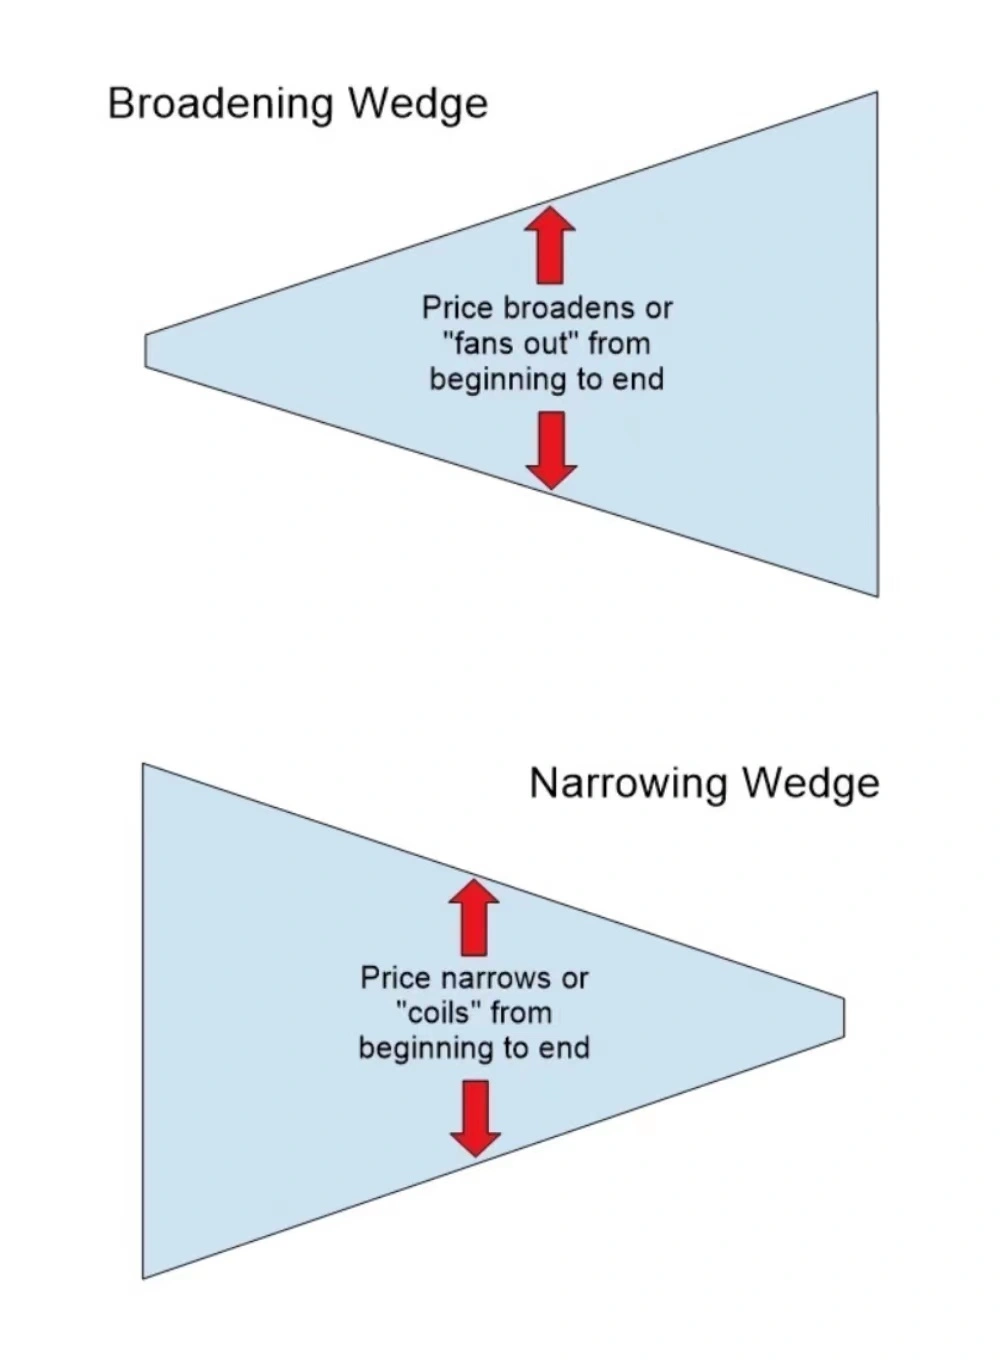 Broadening Wedge Pattern and Narrowing Wedge